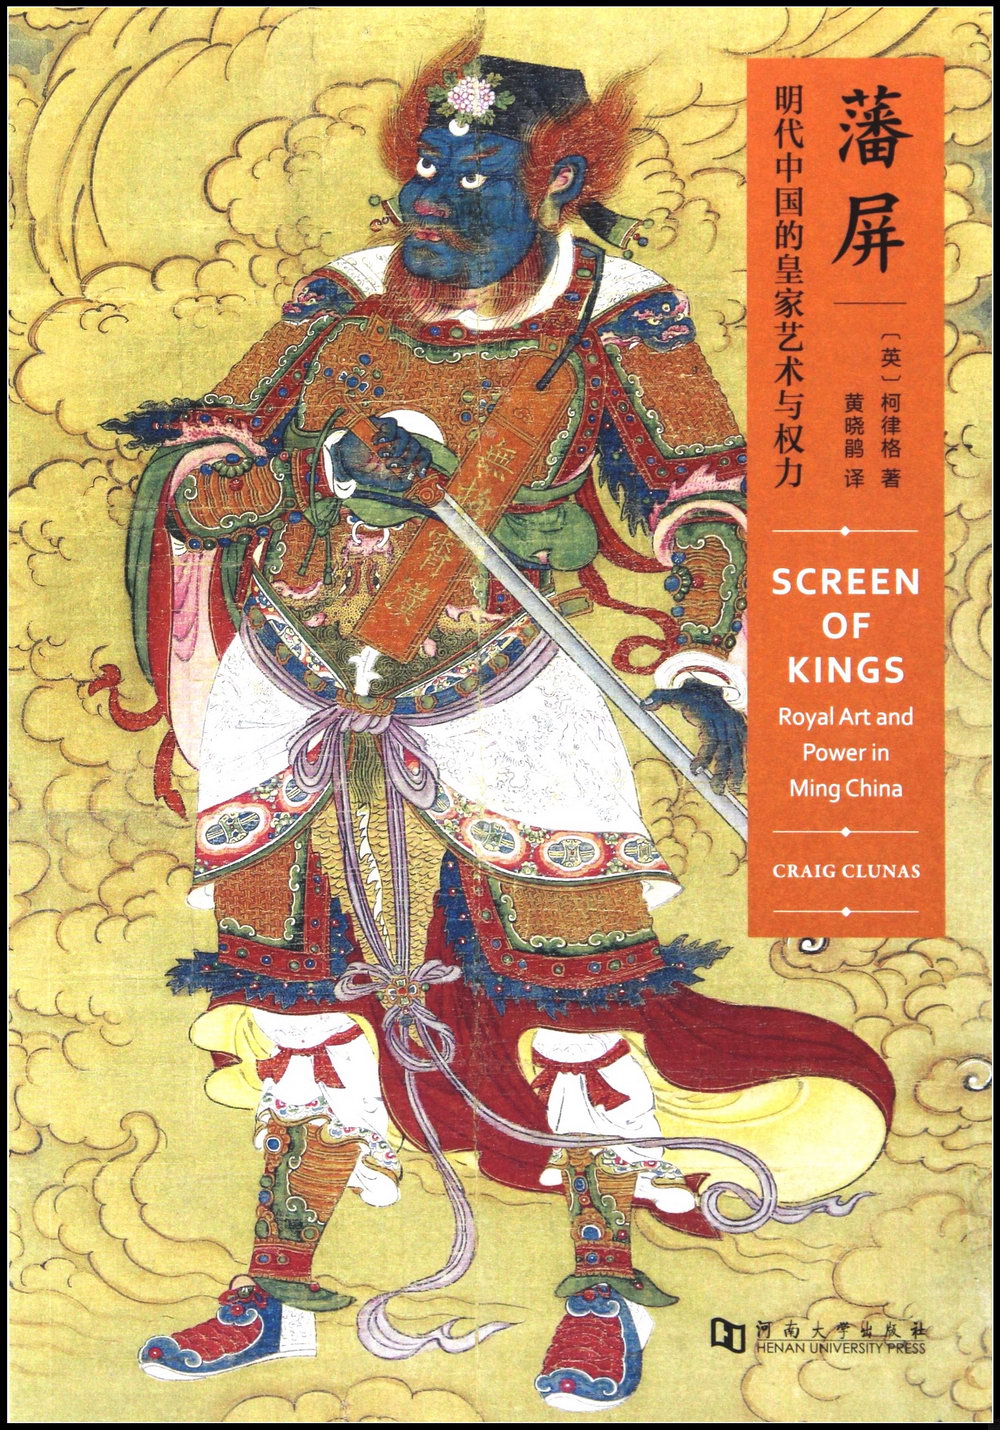 藩屏：明代中國的皇家藝術與權力